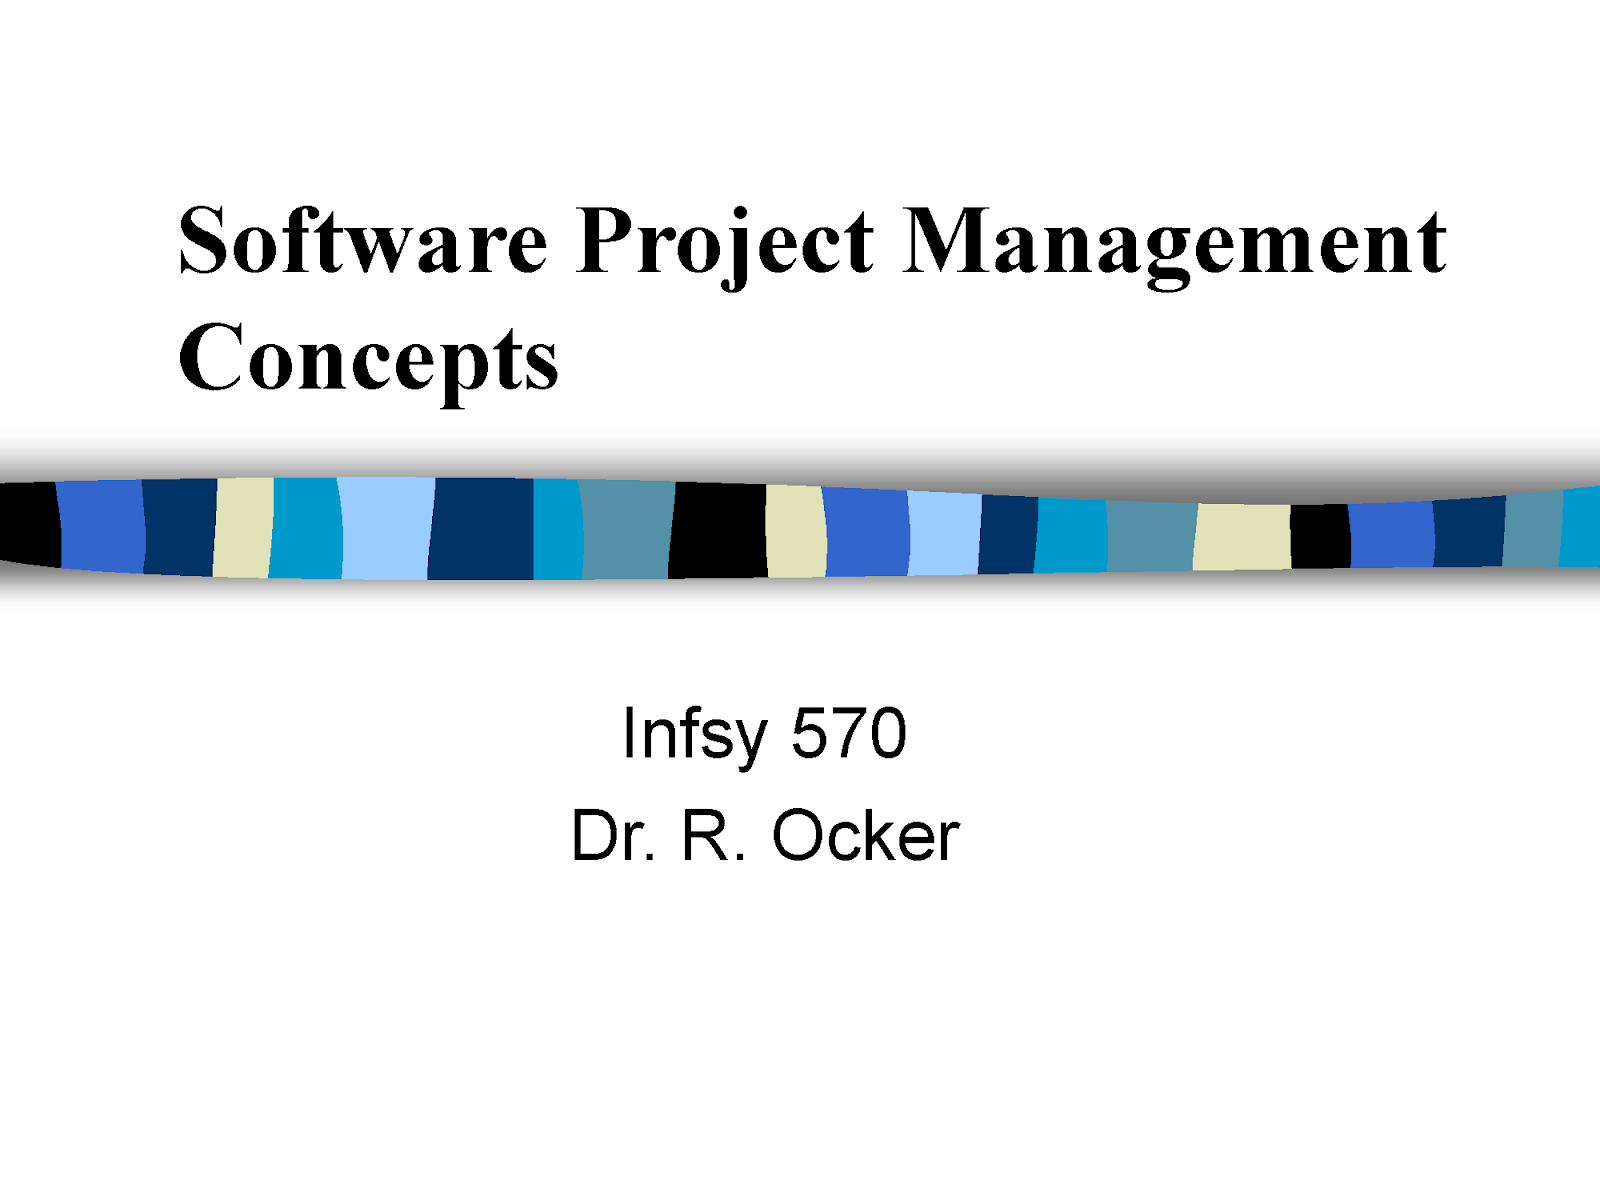 Software Project Management Concepts pdf